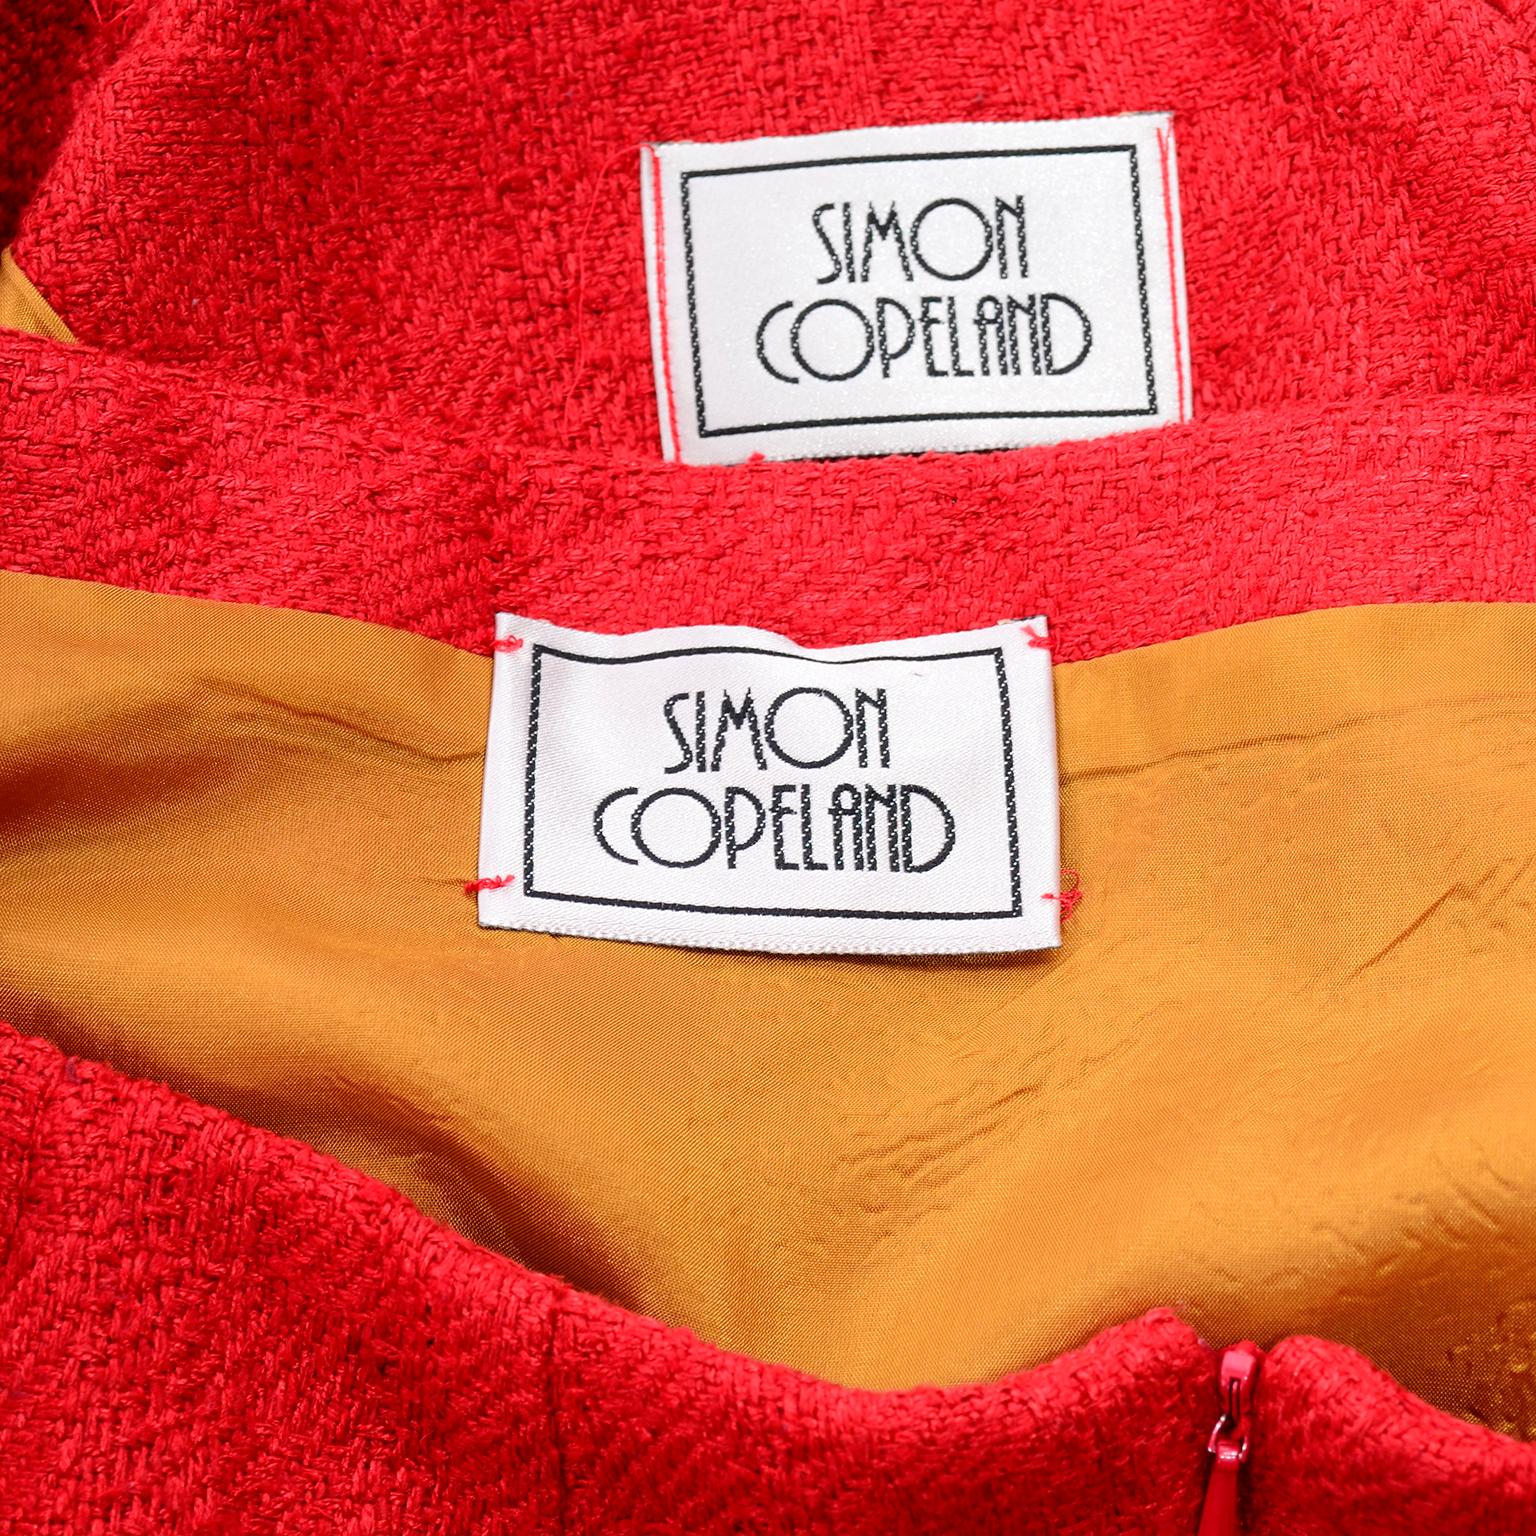 Simon Copeland London Fashion Designer Bespoke Red Skirt & Feather Jacket Suit  5